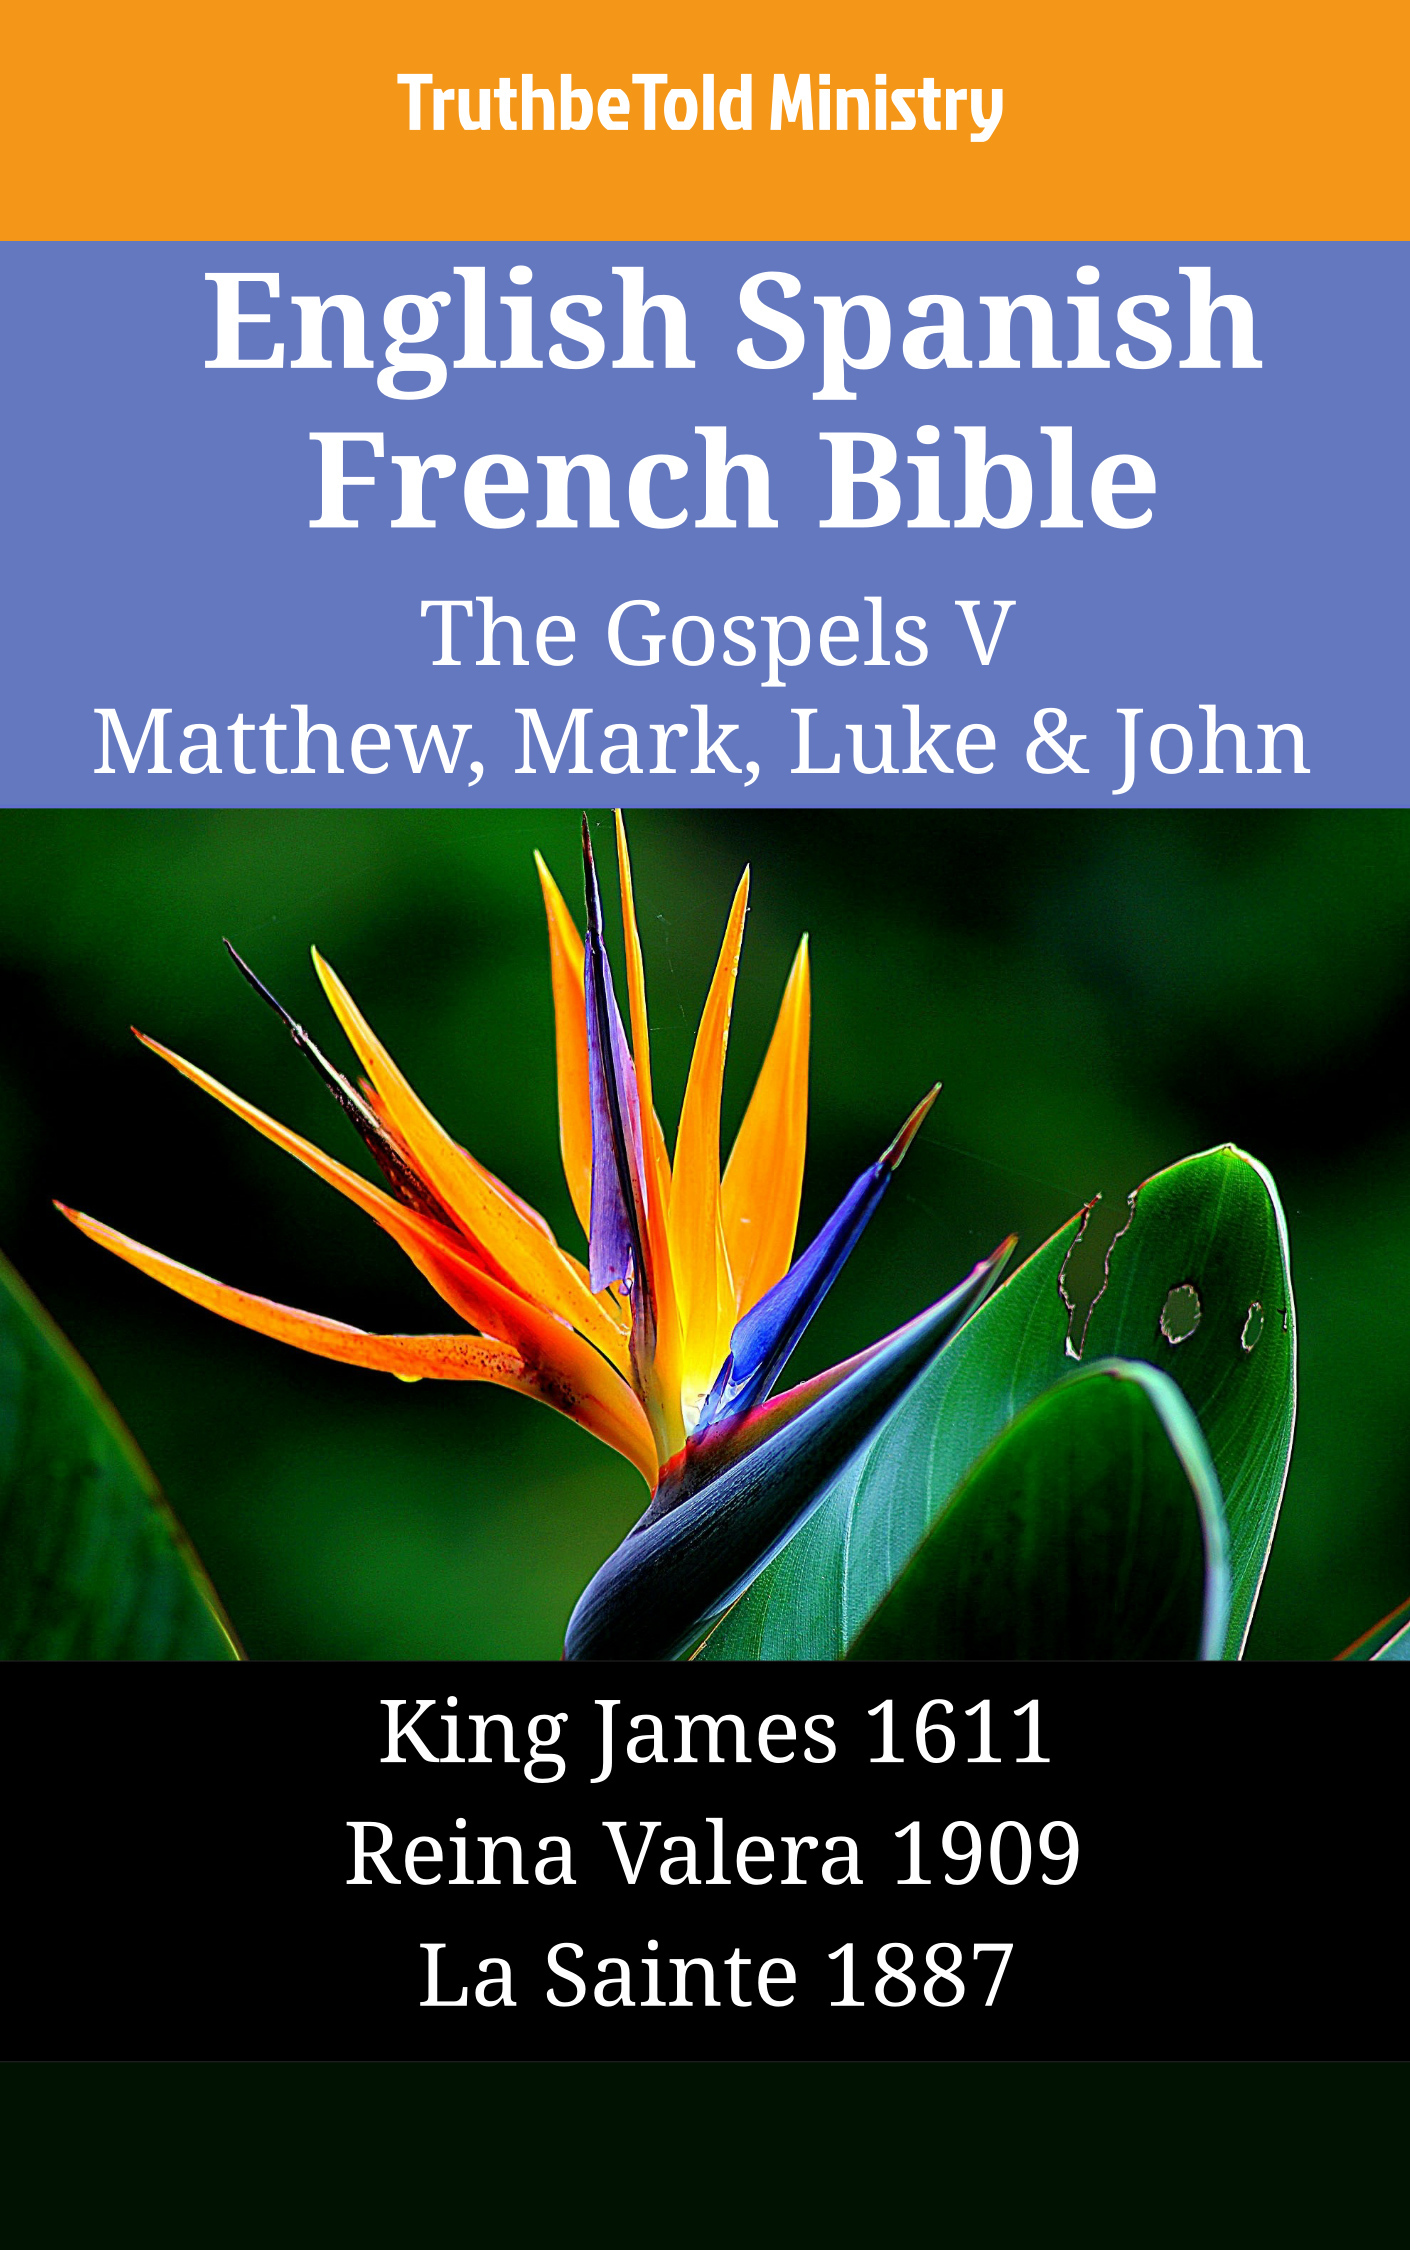 English Spanish French Bible - The Gospels V - Matthew, Mark, Luke & John